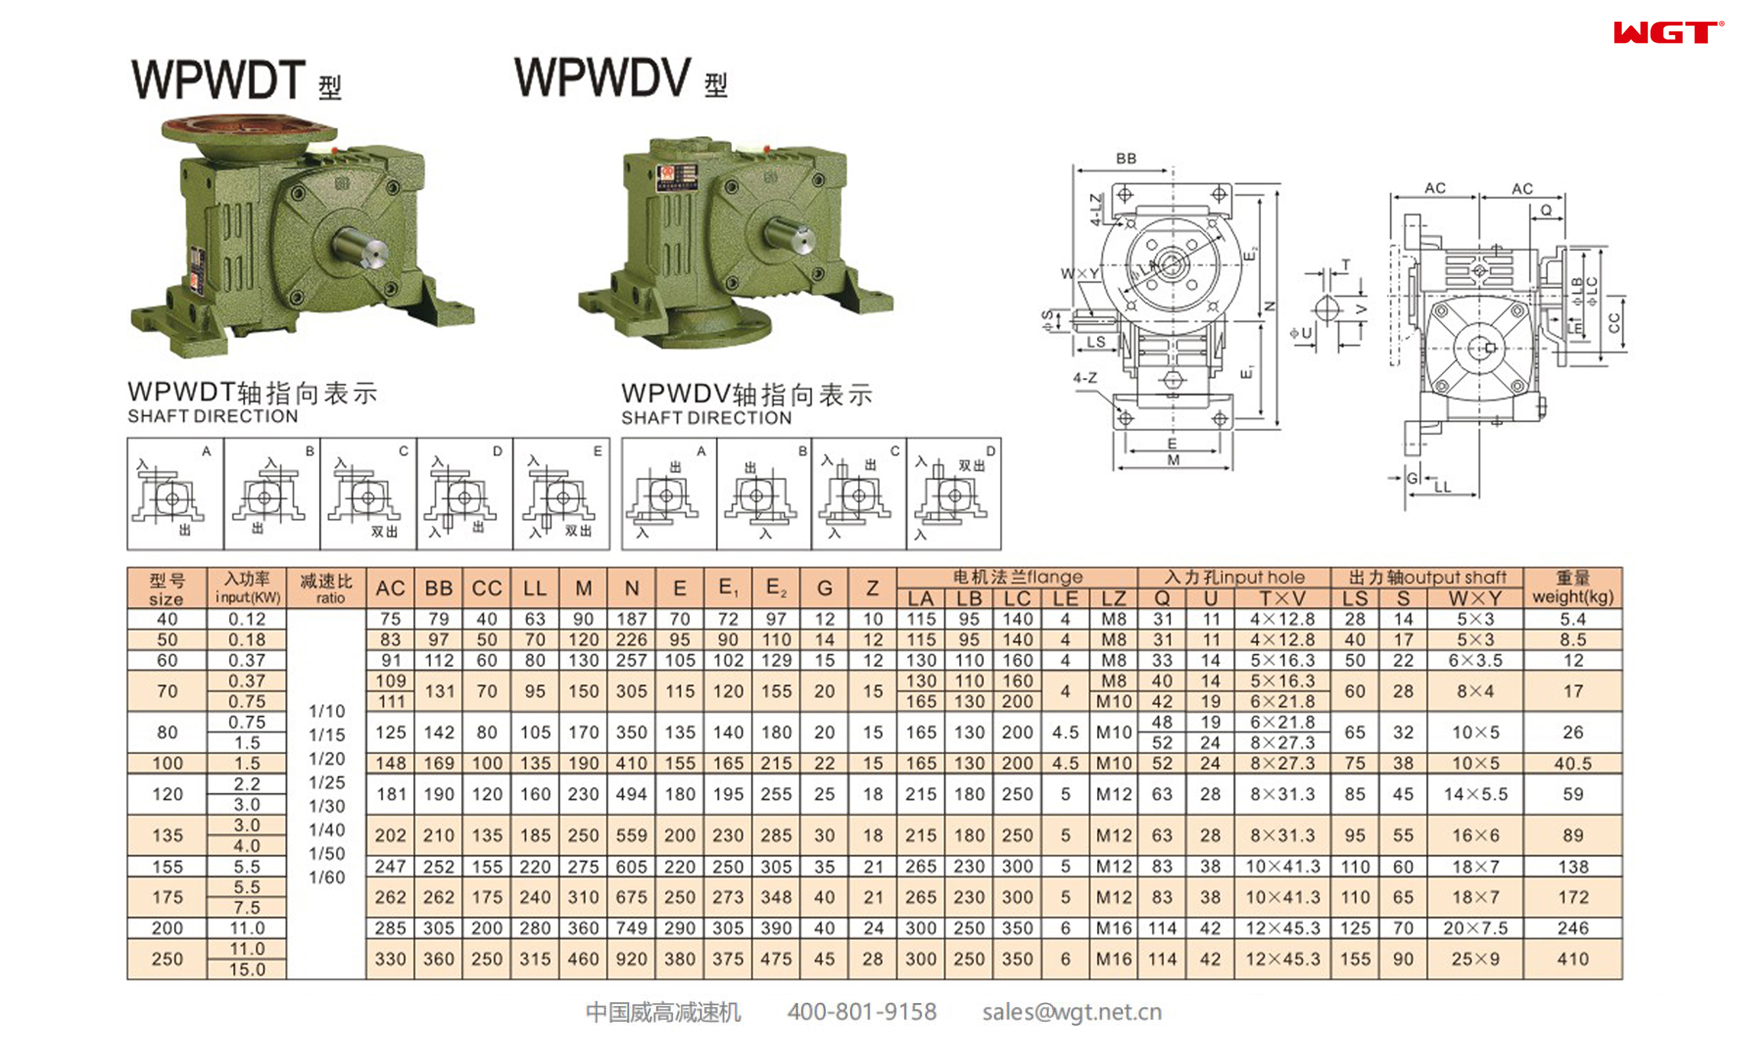 WPWDT WPWDV80 Червячный редуктор Универсальный редуктор